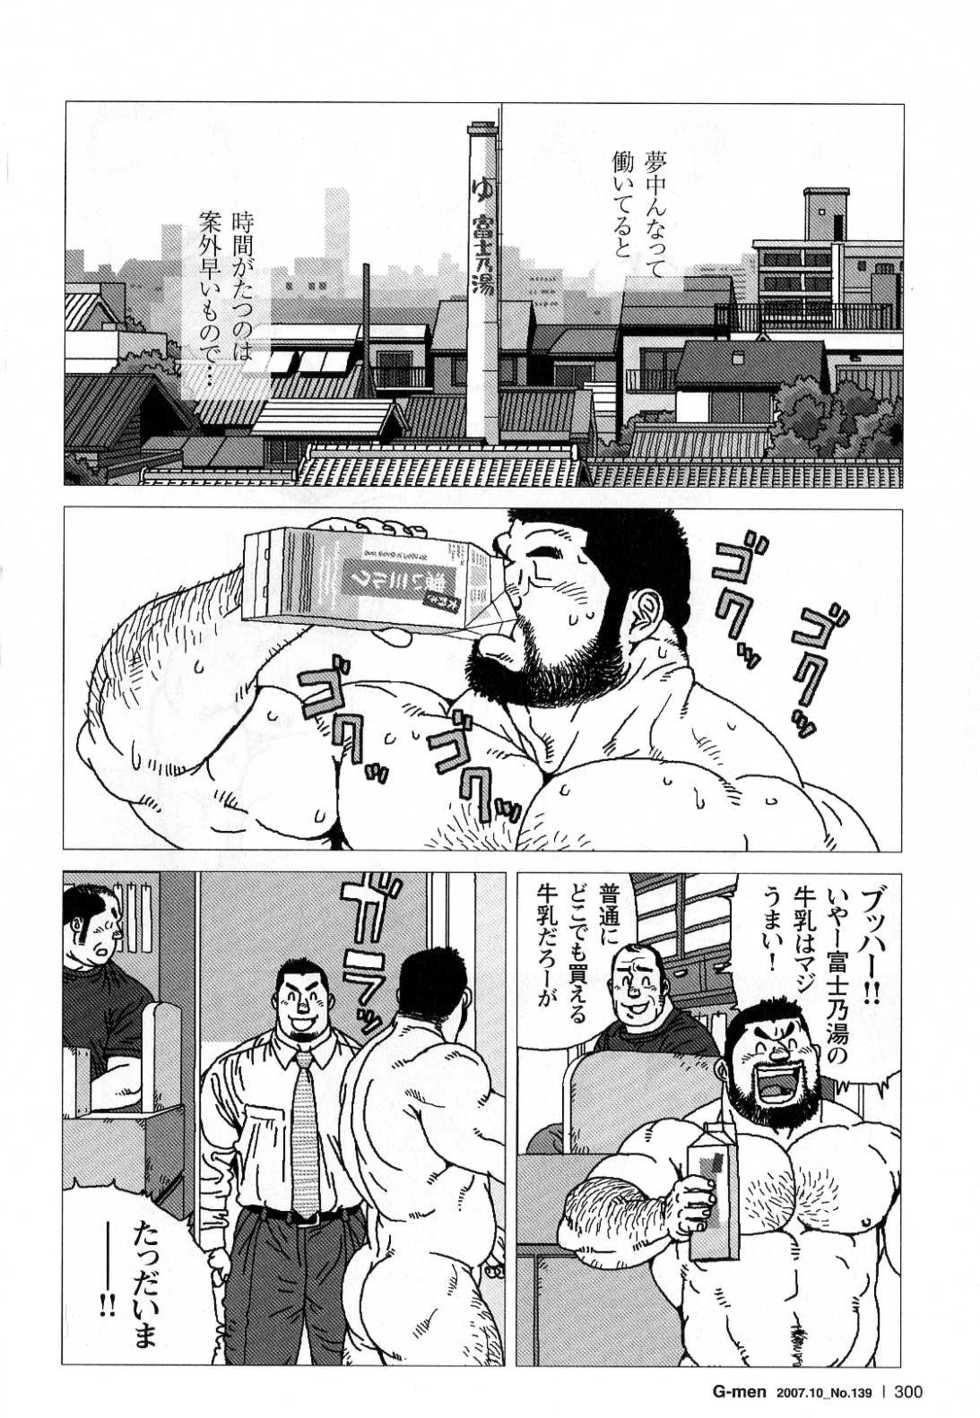 [Jiraiya] Kibou Machi Sanchoume Fujino Yu Monogatari (G-men No.139 2007-10) - Page 26